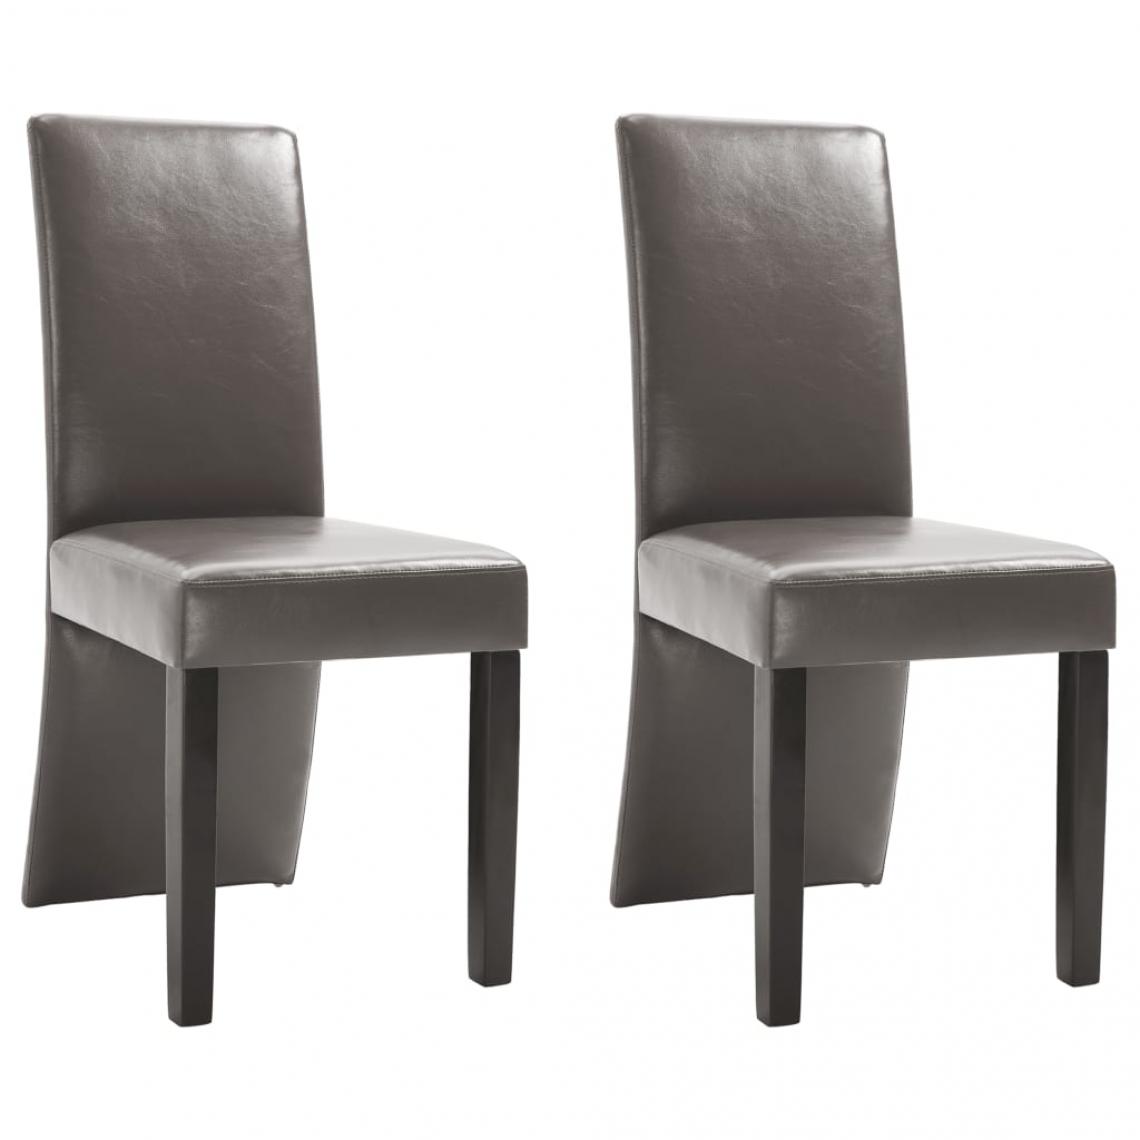 Decoshop26 - Lot de 2 chaises de salle à manger cuisine design moderne similicuir gris CDS020571 - Chaises